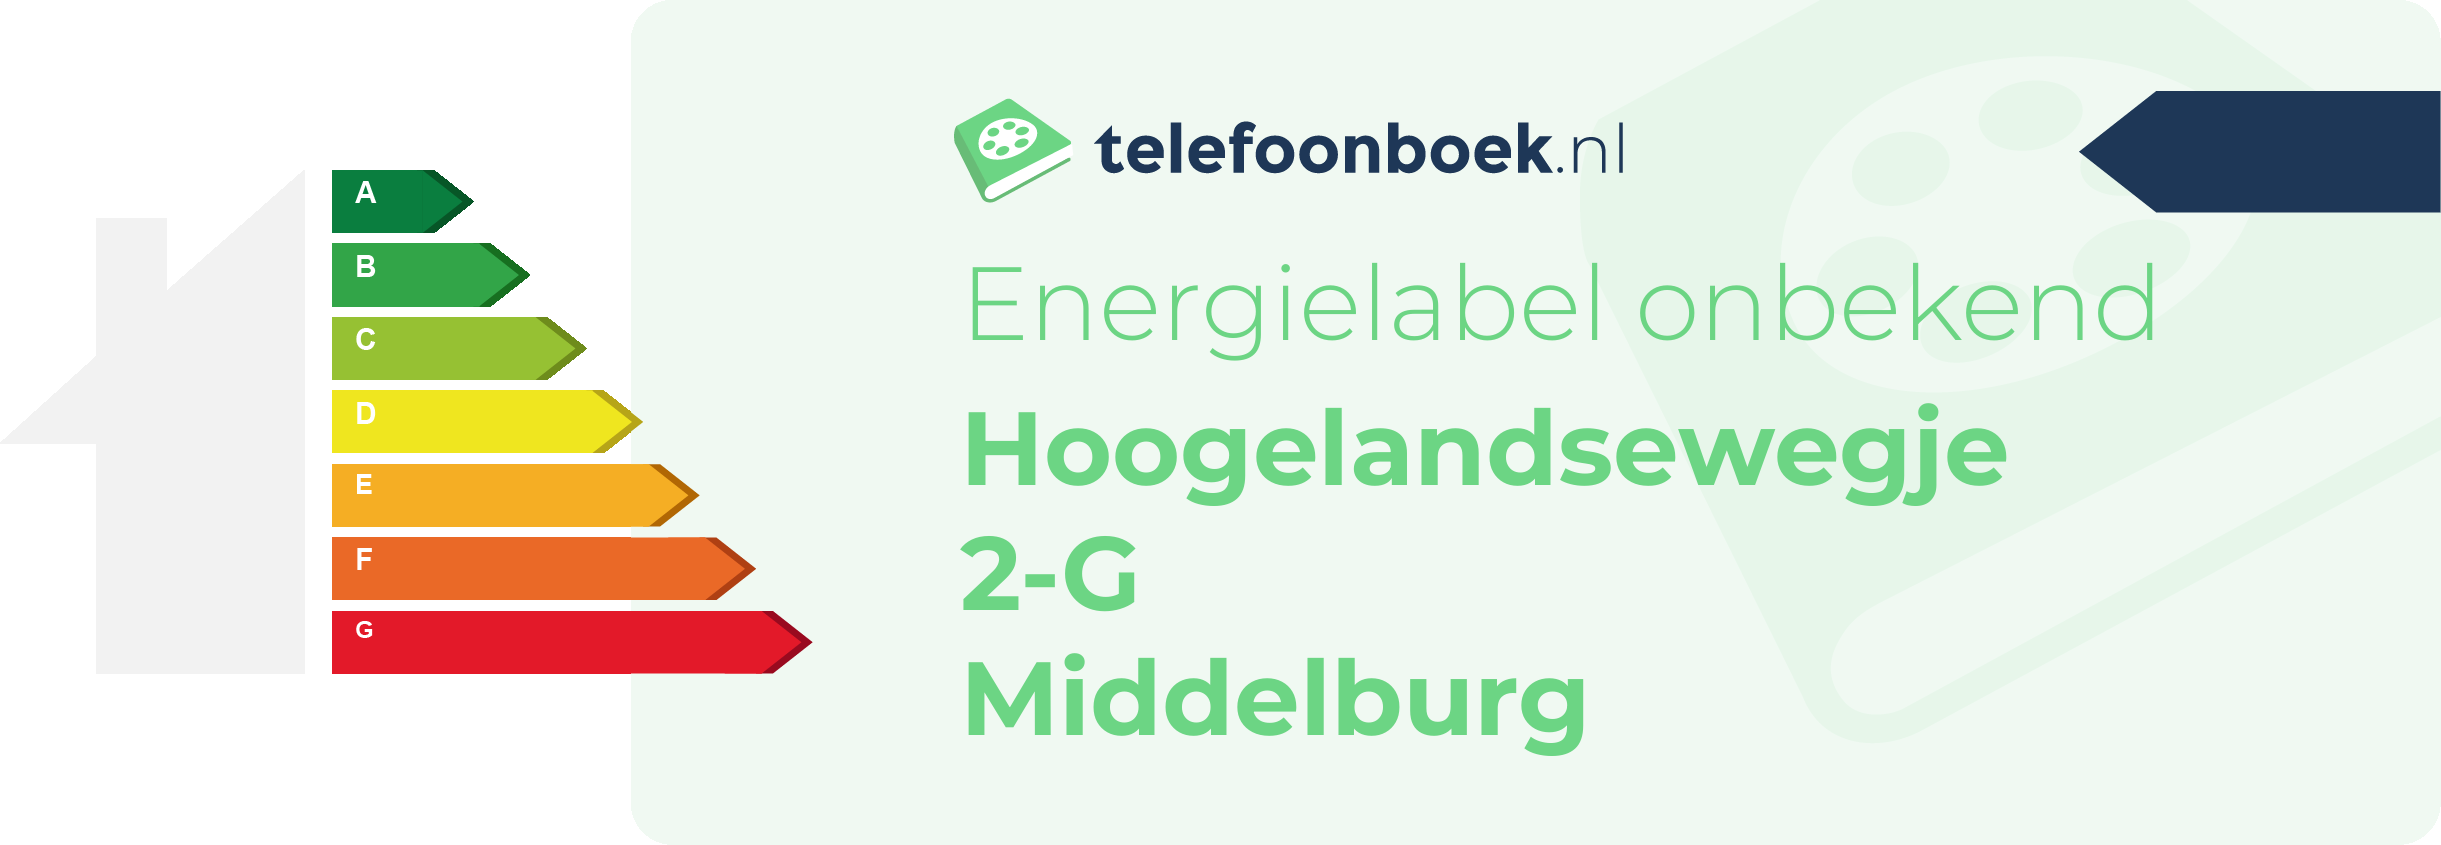 Energielabel Hoogelandsewegje 2-G Middelburg